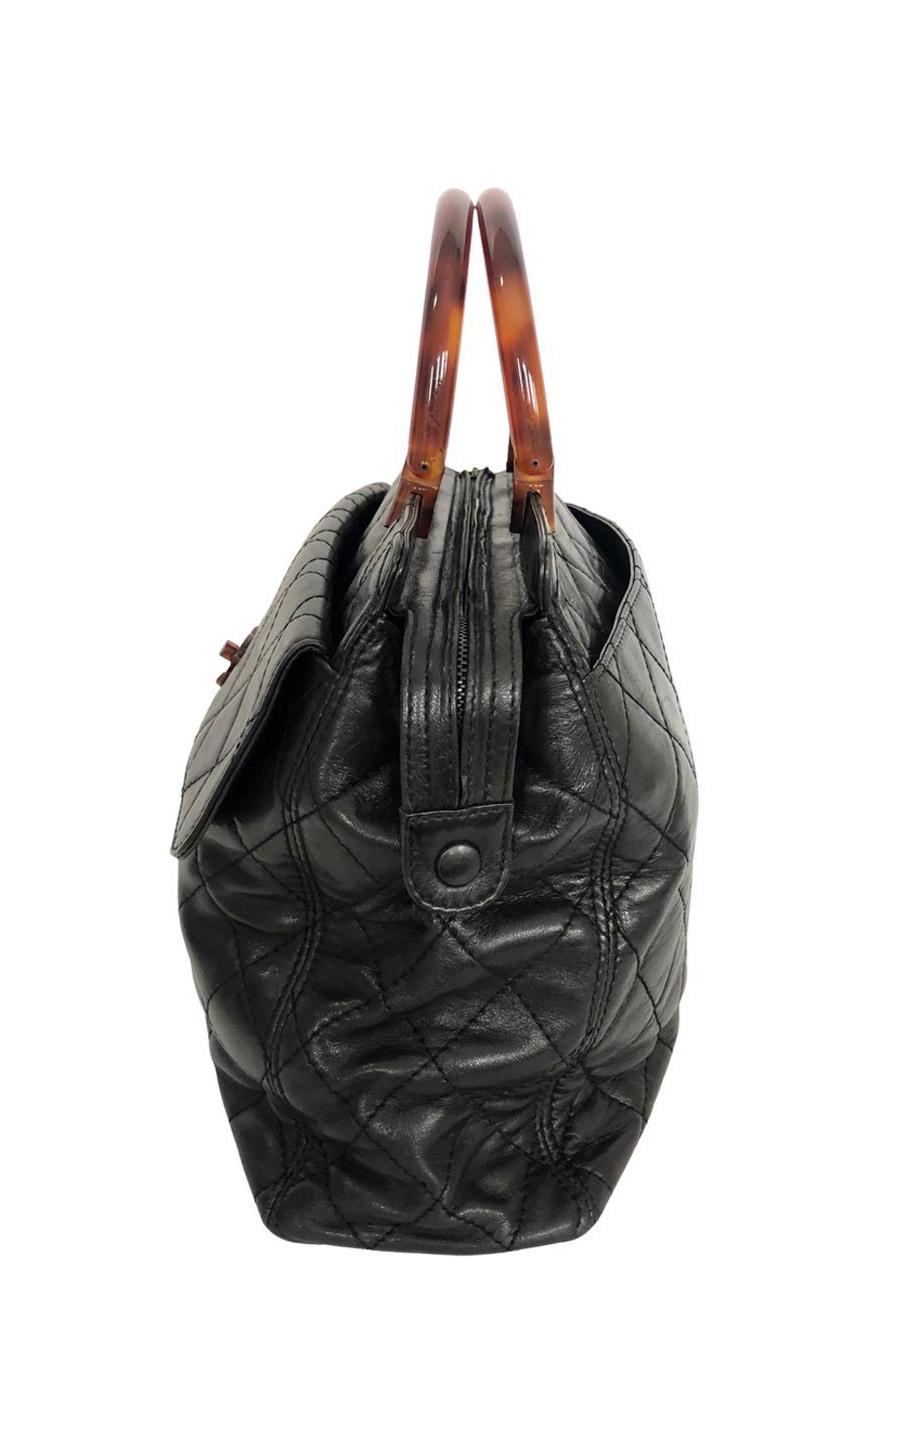 Black Vintage Chanel Handbag with brown colored hardware - Large  For Sale